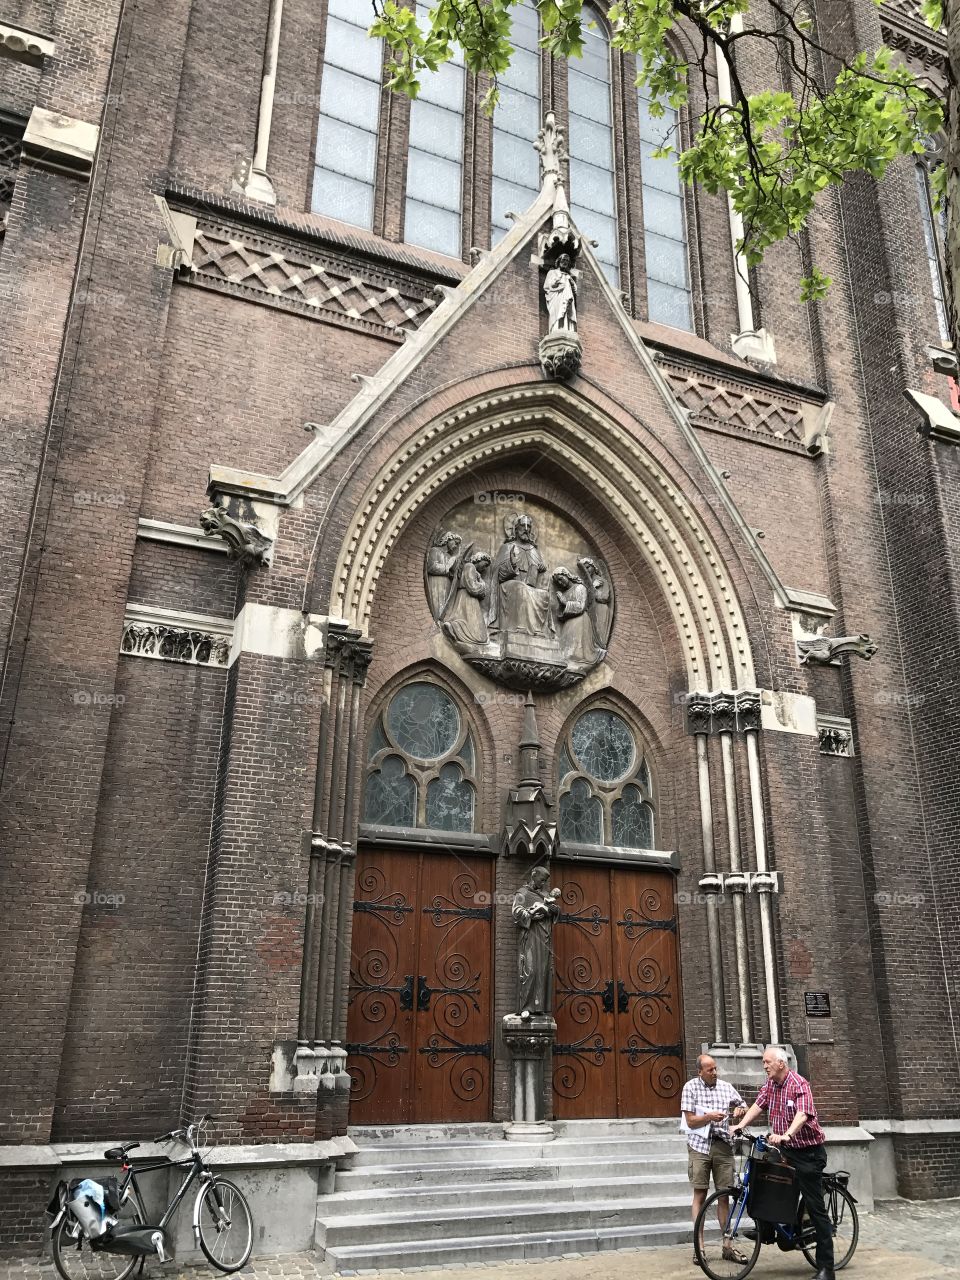 The Hauge
Netherlands 
Catholic 
Church
Stone
